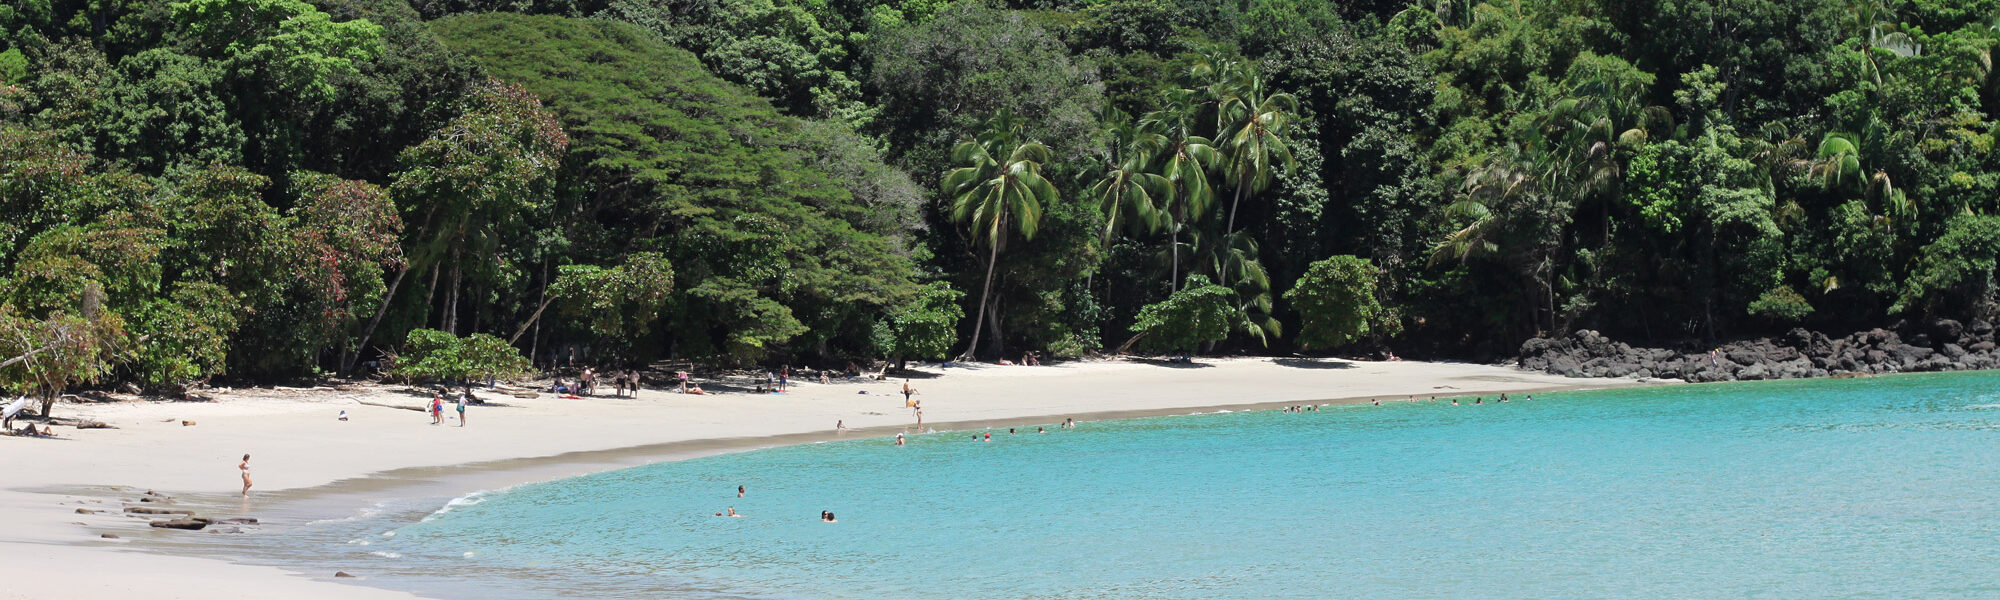 5 reden om naar Costa Rica te reizen - Prachtige natuurparken: Parque Nacional Manuel Antonio